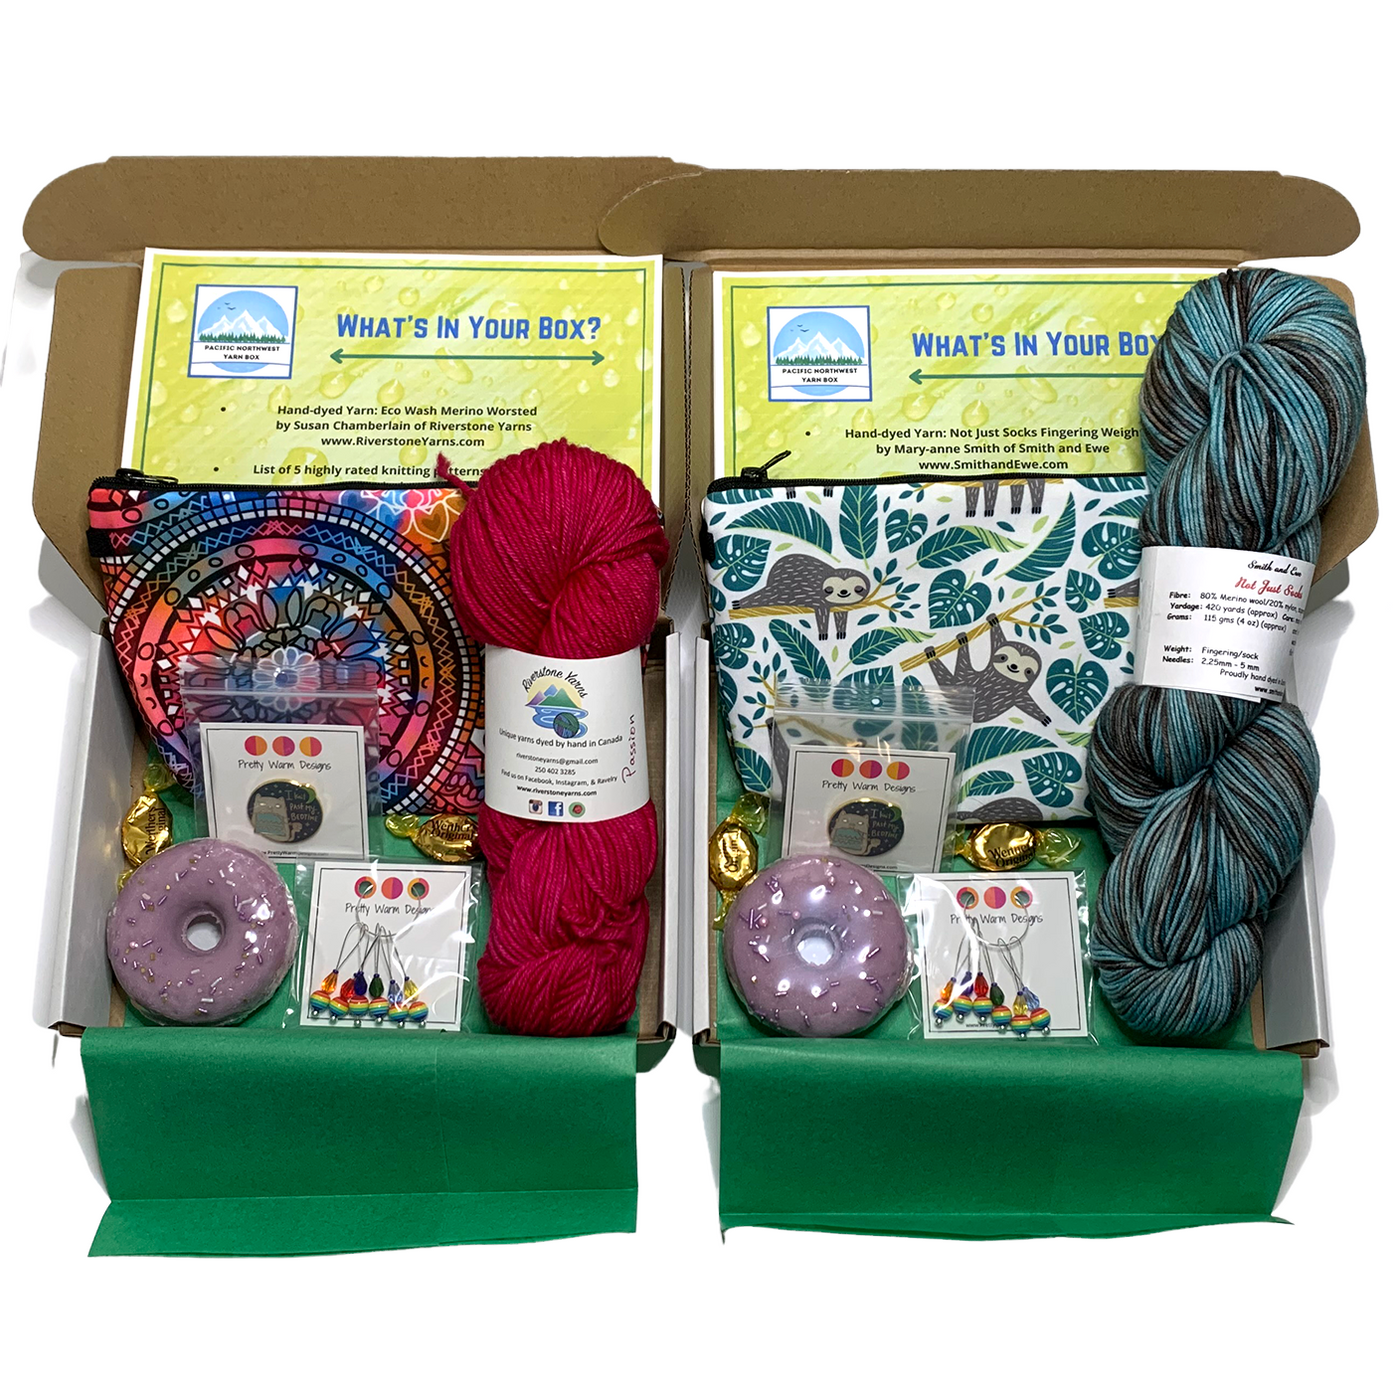 Pacific Northwest Mystery Yarn Box – Pretty Warm Designs